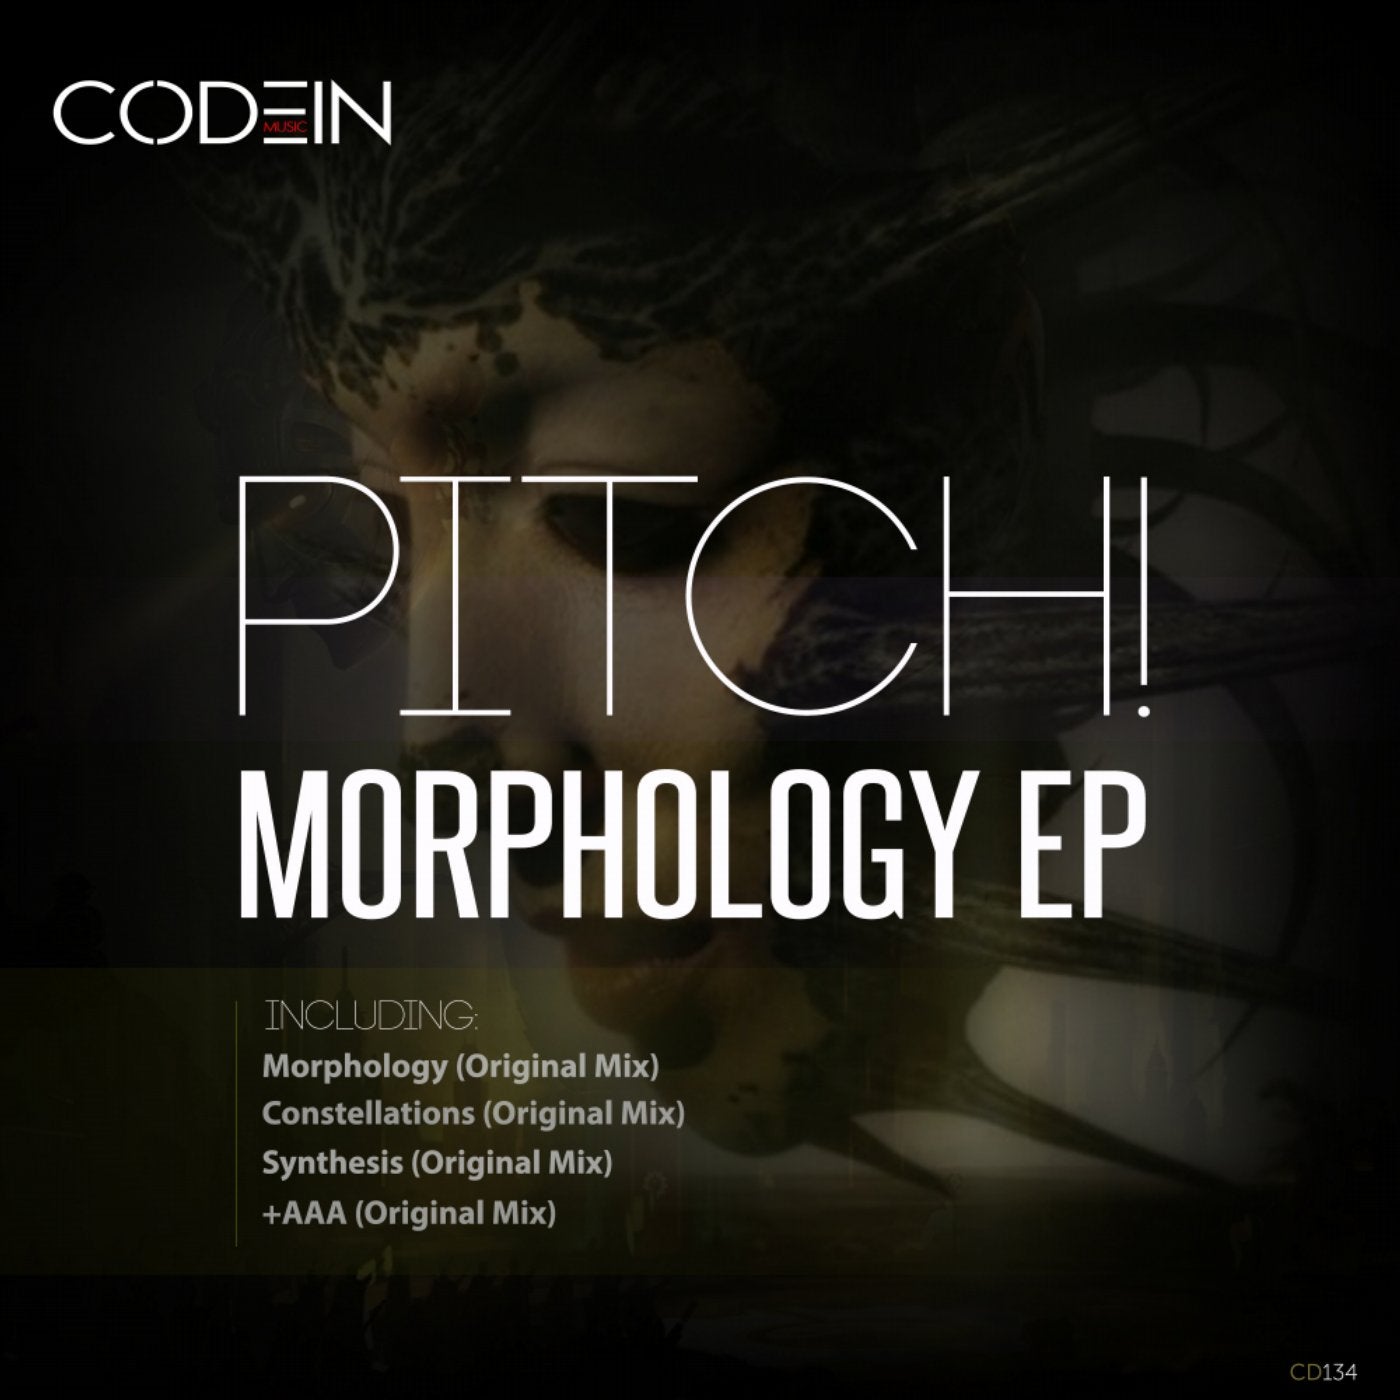 Morphology EP